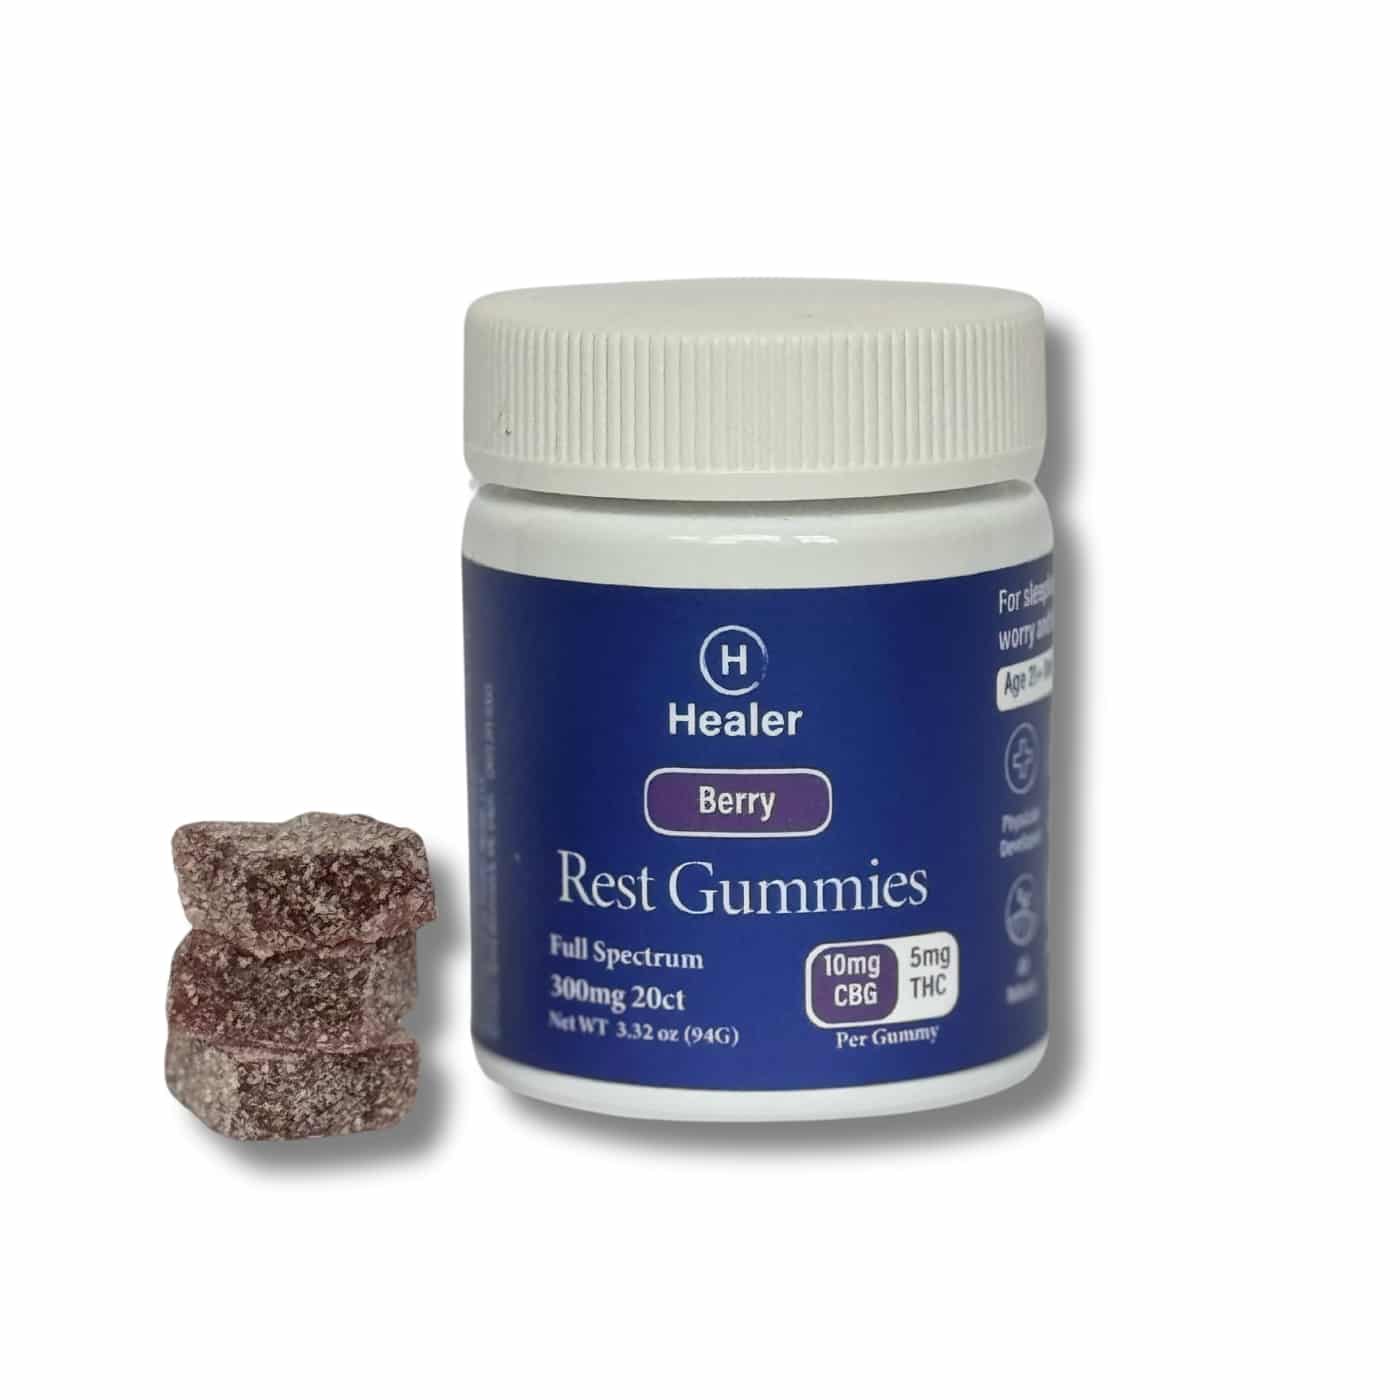 Healer Rest Gummies